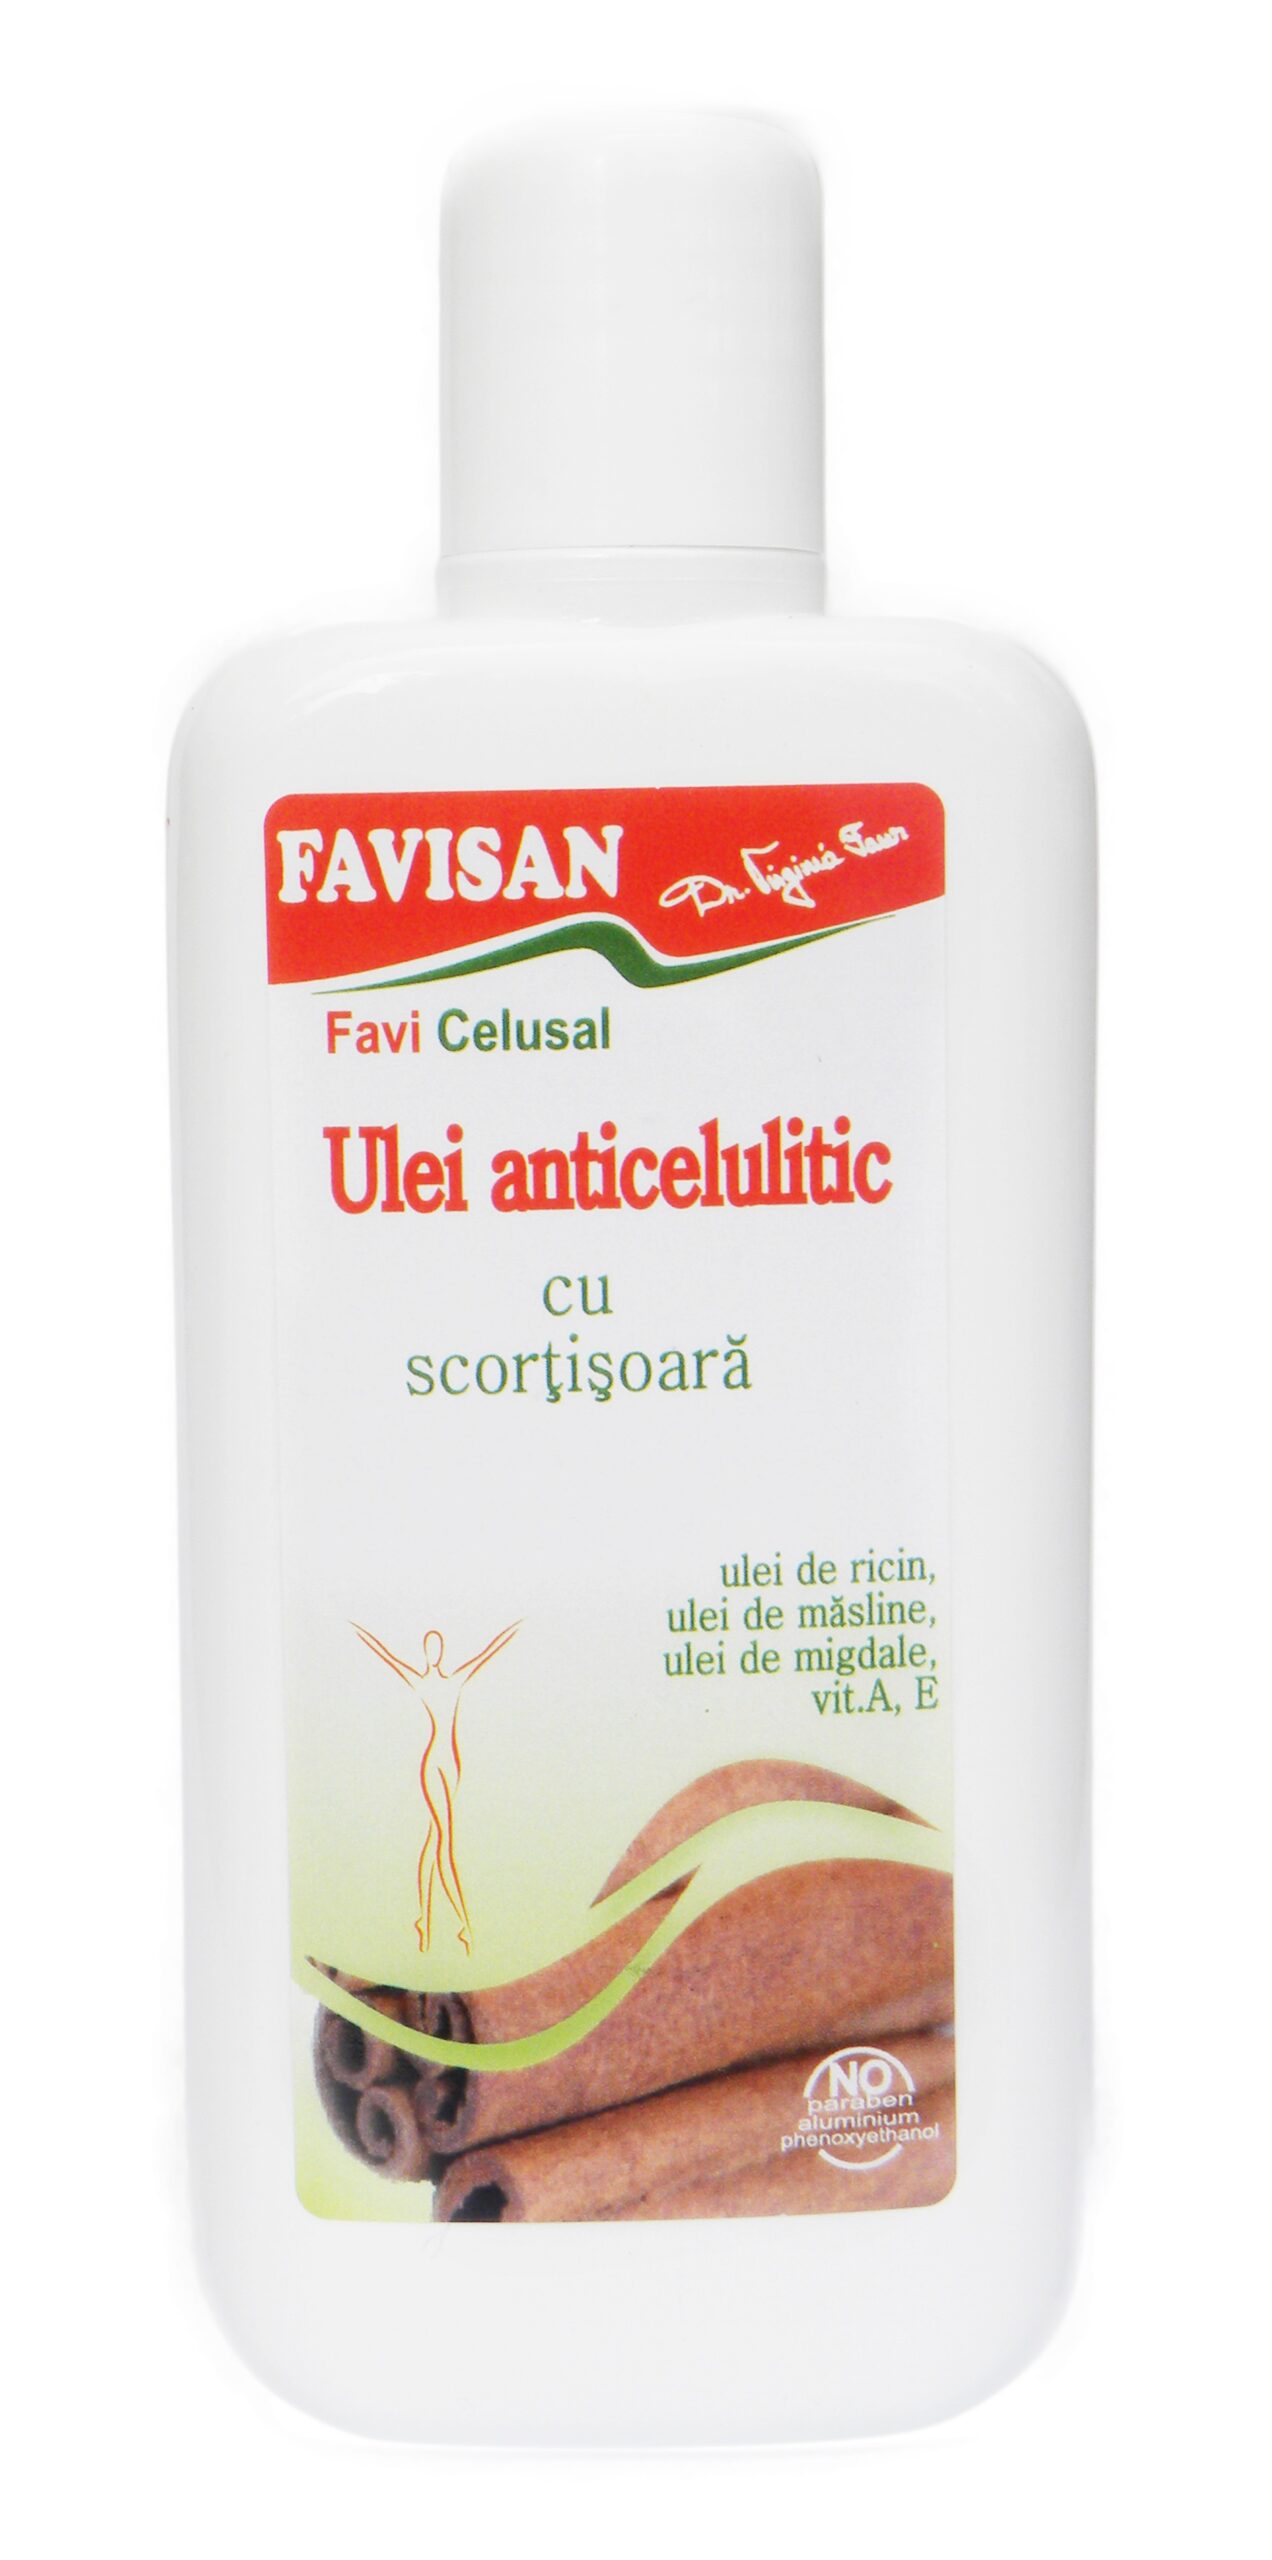 Cicatrici, vergeturi, celulita - Ulei anticelulitic cu scortisoara Favi Celusal, 125 ml, Favisan, farmaciamare.ro